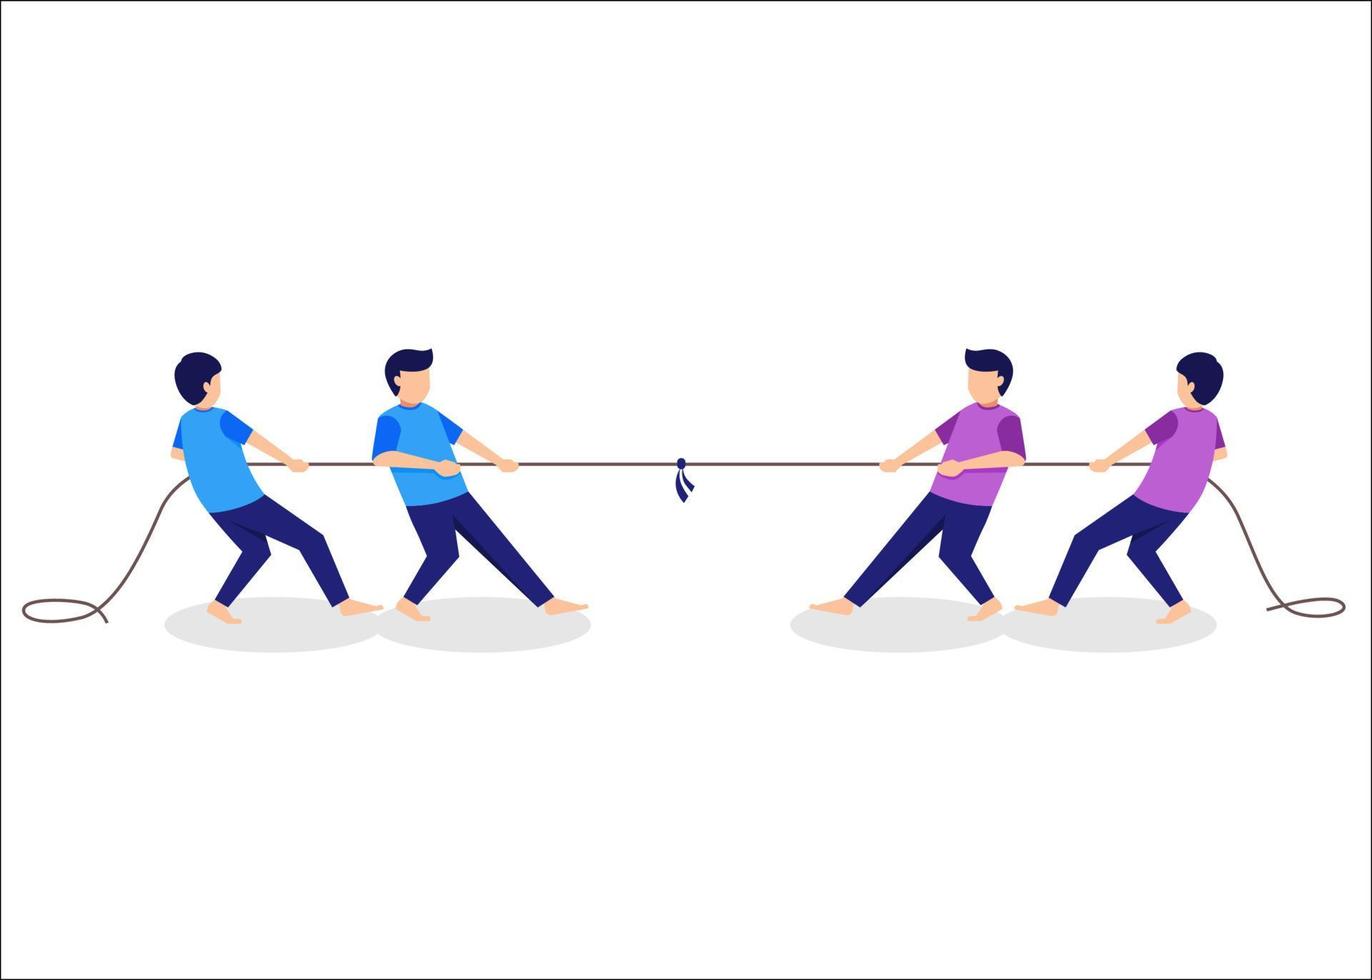 touwtrekken concurrentie. traditionele spellen concept illustratie vector